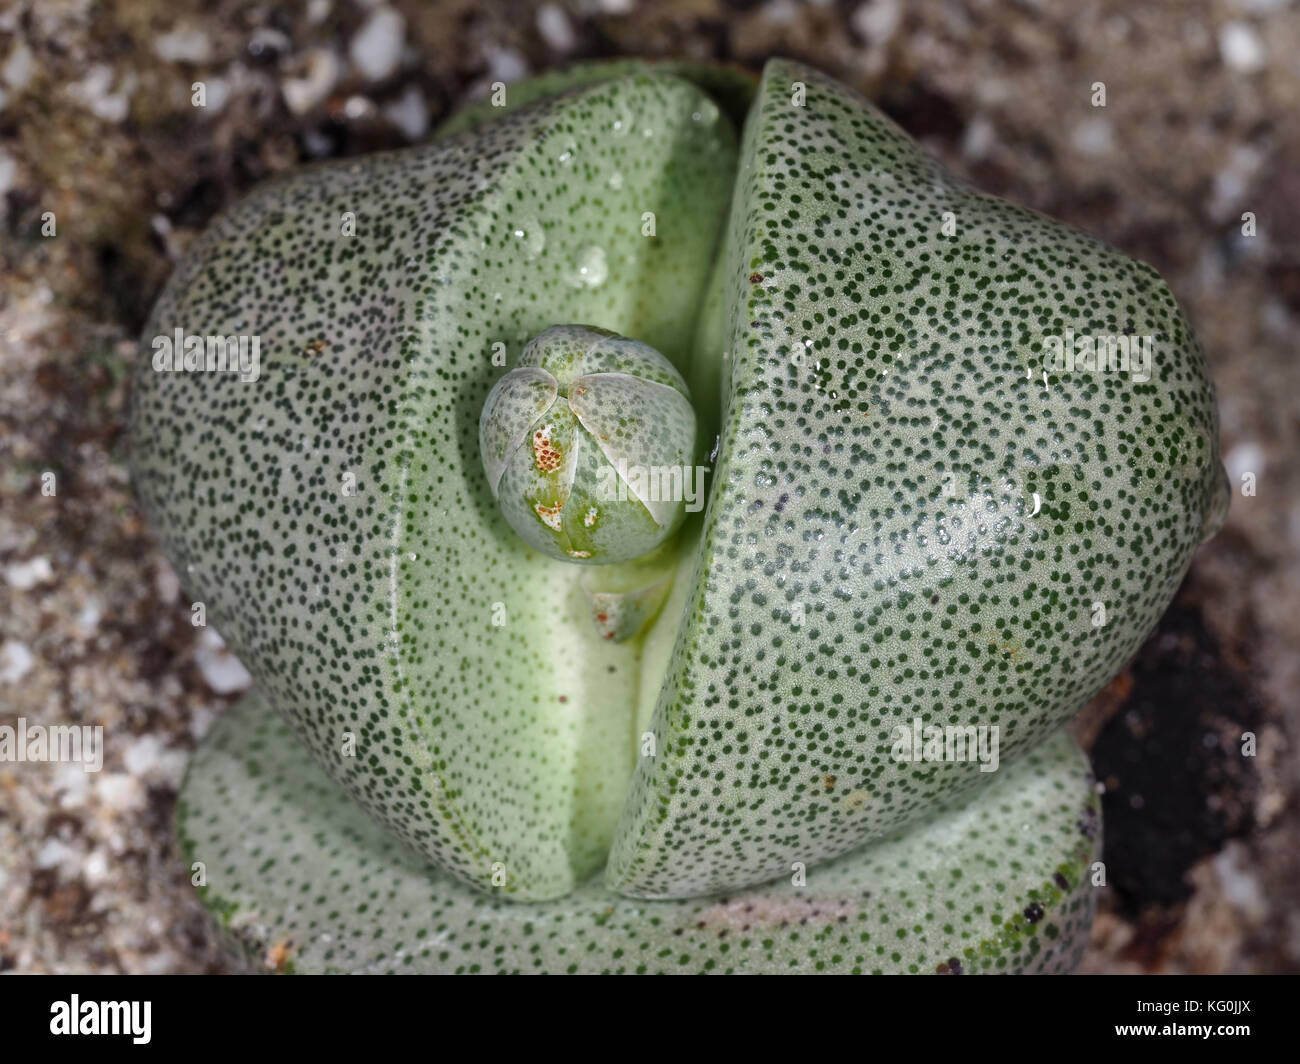 Lithops sp. succulent plant close-up Stock Photo